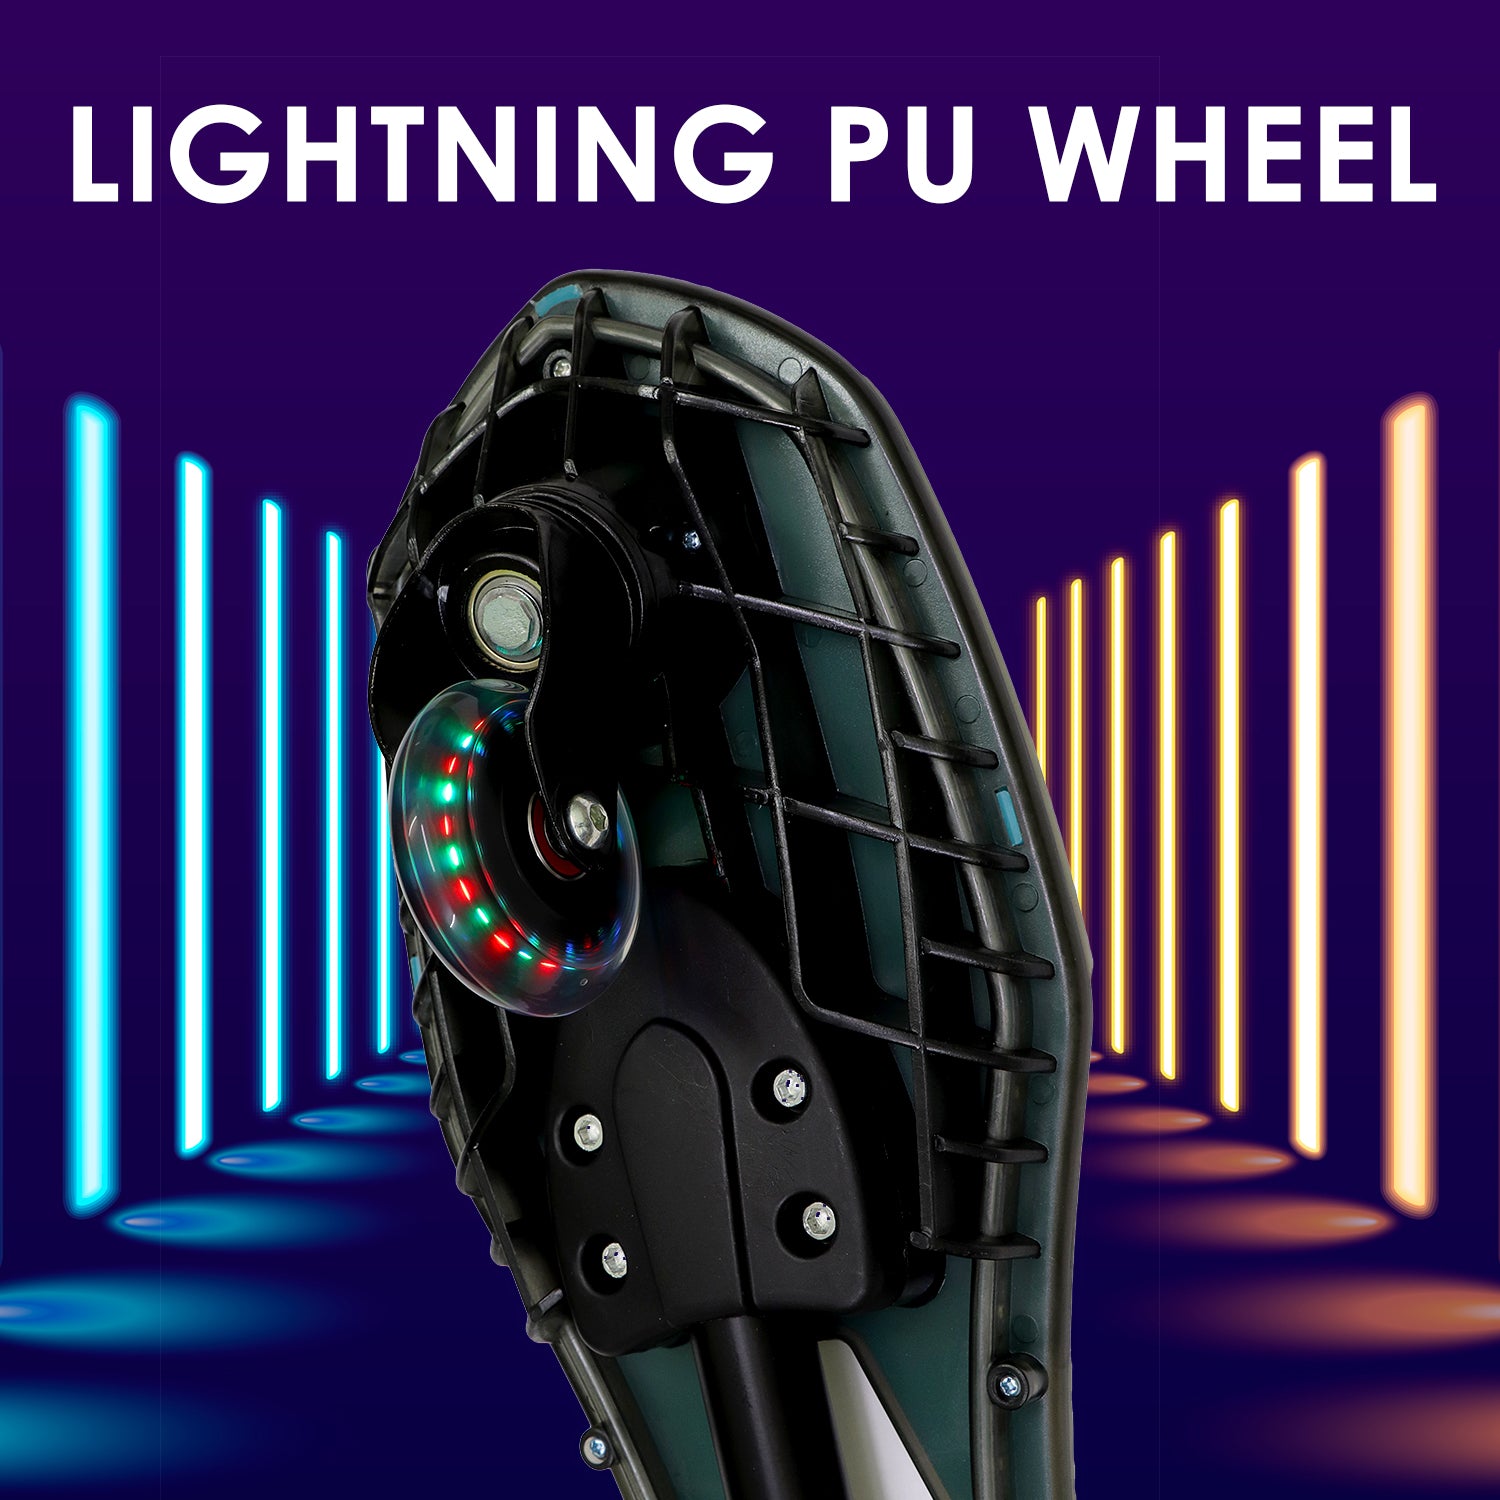 7803-lightning-pu-wheel-of-zig-zag-waveboard-green